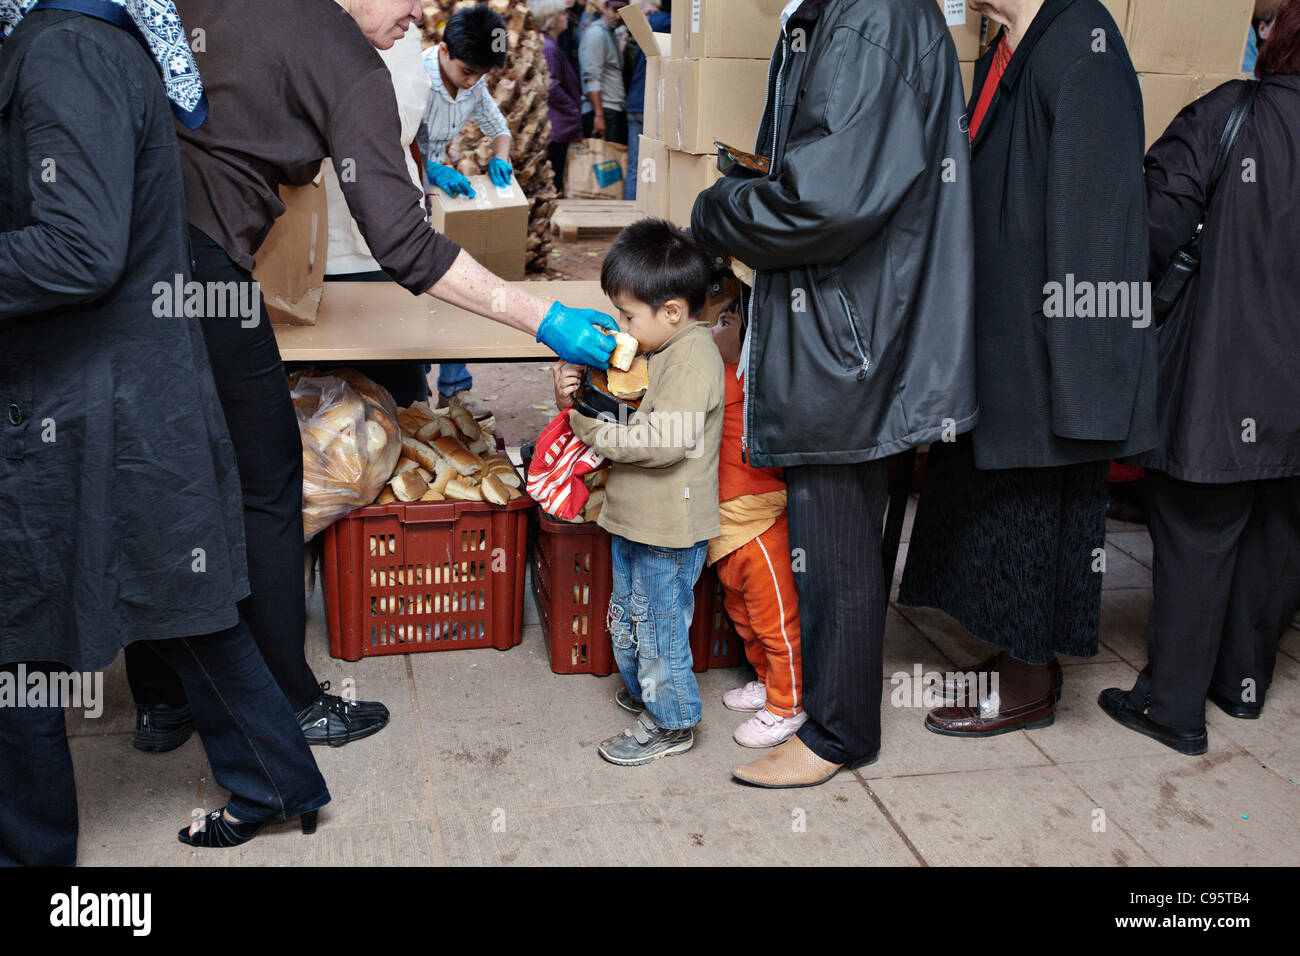 Afghanische Flüchtlinge, kostenloses Essen in Athen, Griechenland. Stockfoto